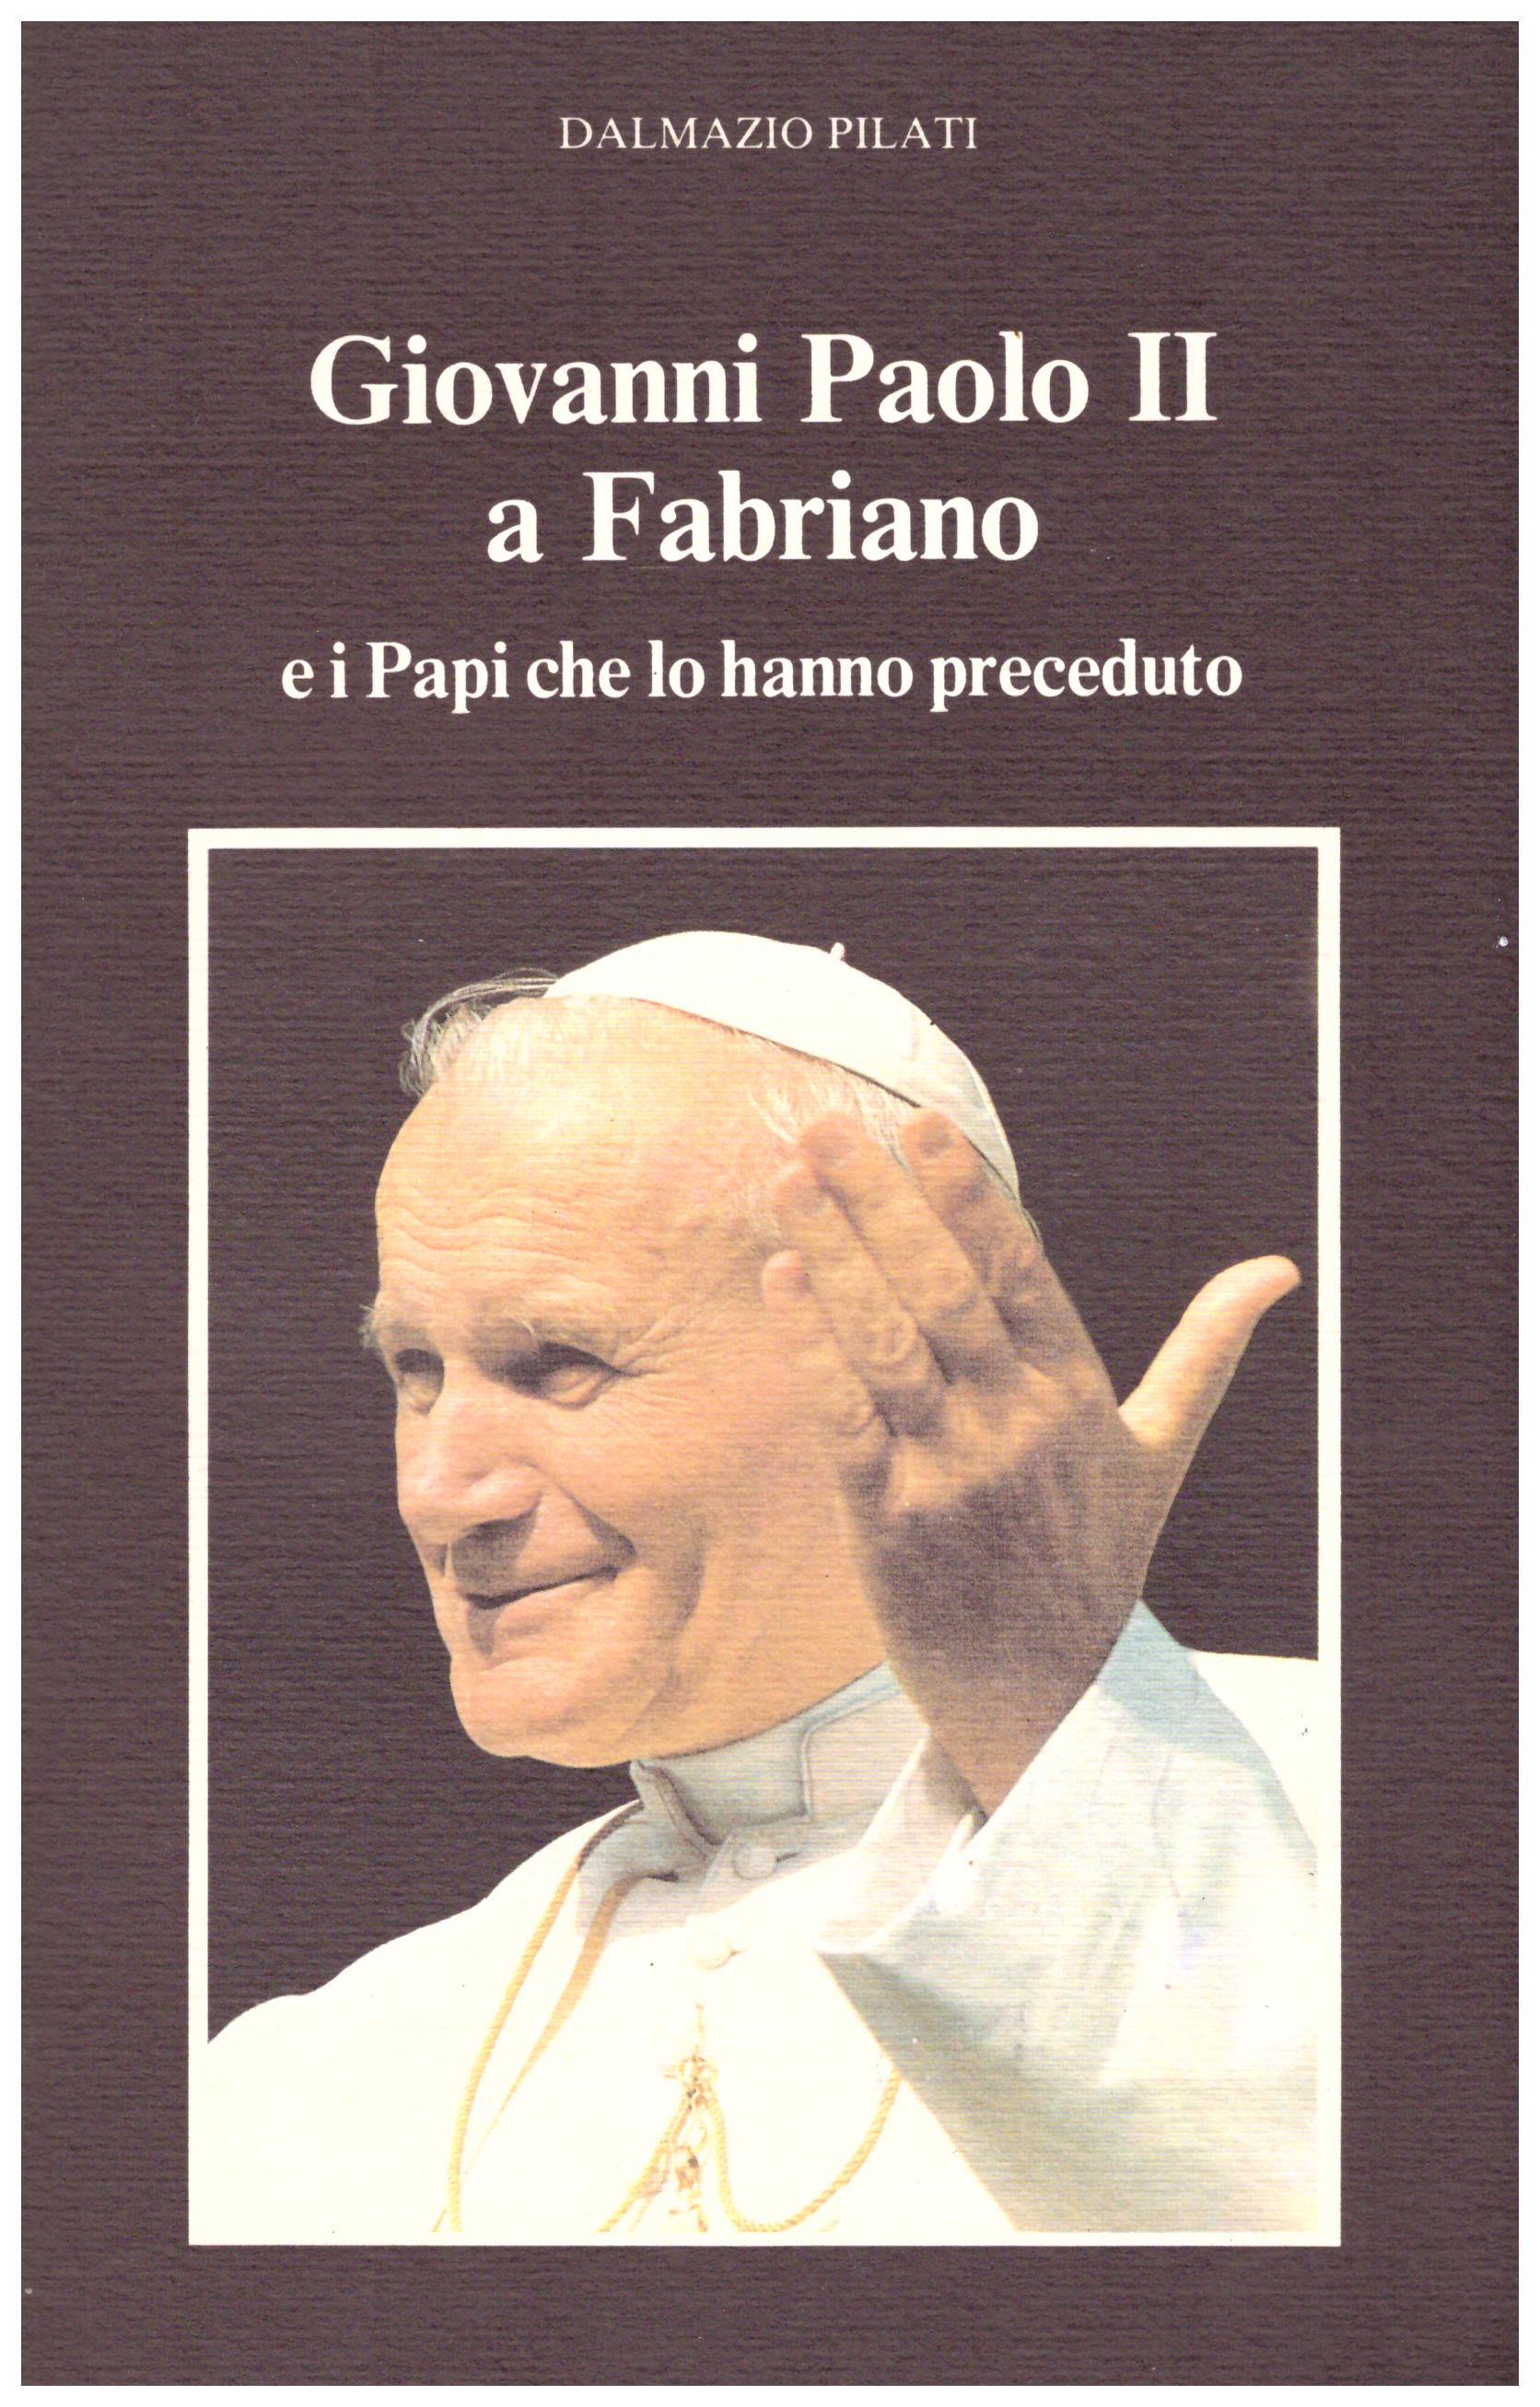 Titolo: Giovanni Paolo II a Fabriano Autore : Dalmazio Pilati Editore: arti grafiche gentile 1991